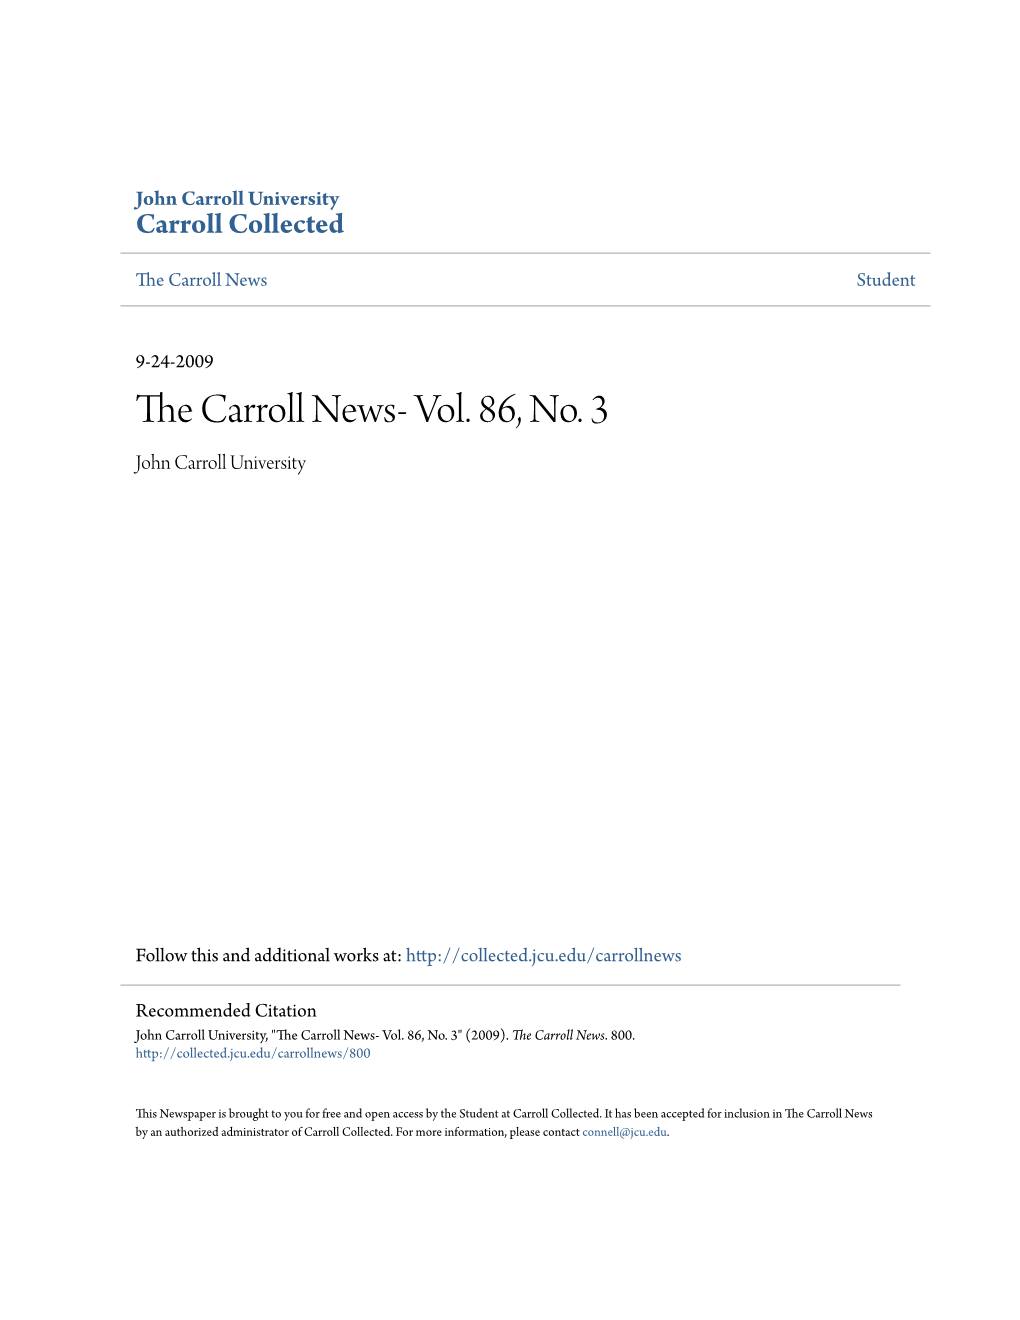 The Carroll News- Vol. 86, No. 3